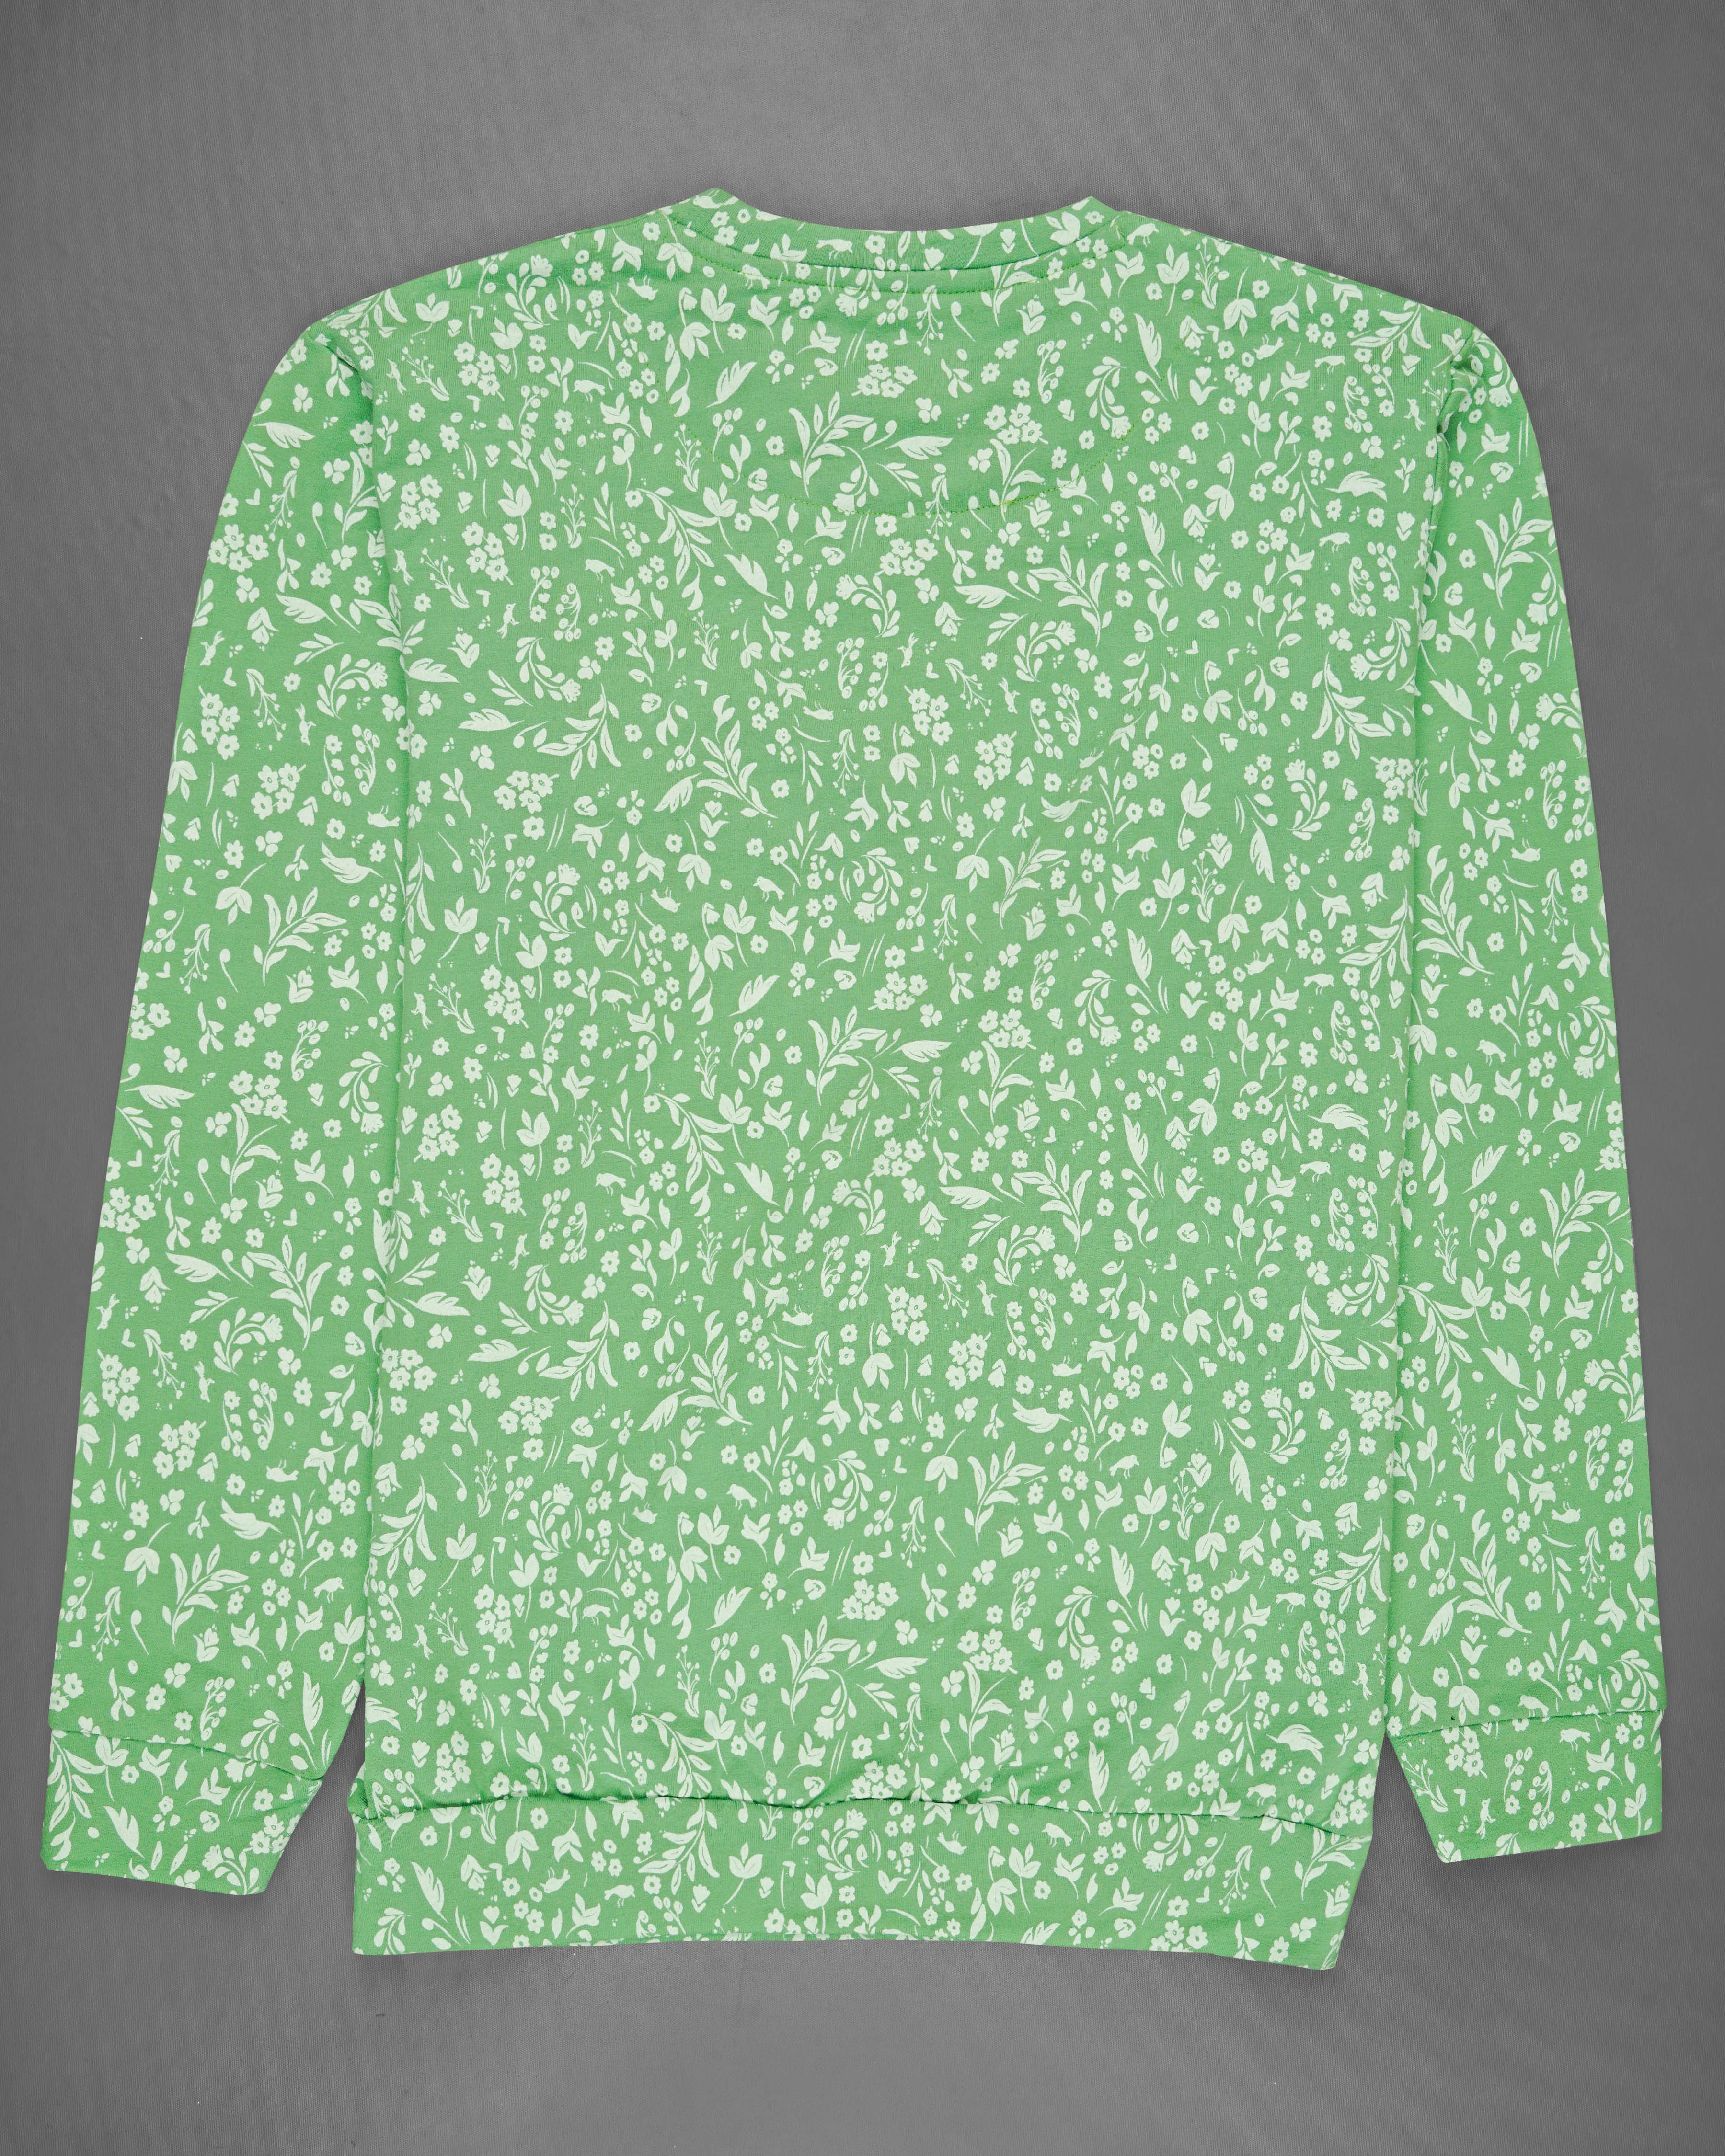 Mantis Green Ditsy Printed Full Sleeve Premium Cotton Jersey Sweatshirt 

TS618-M, TS618-M, TS618-R, TS618-XL, TS618-XXL, TS618-3XL, TS618-4XL